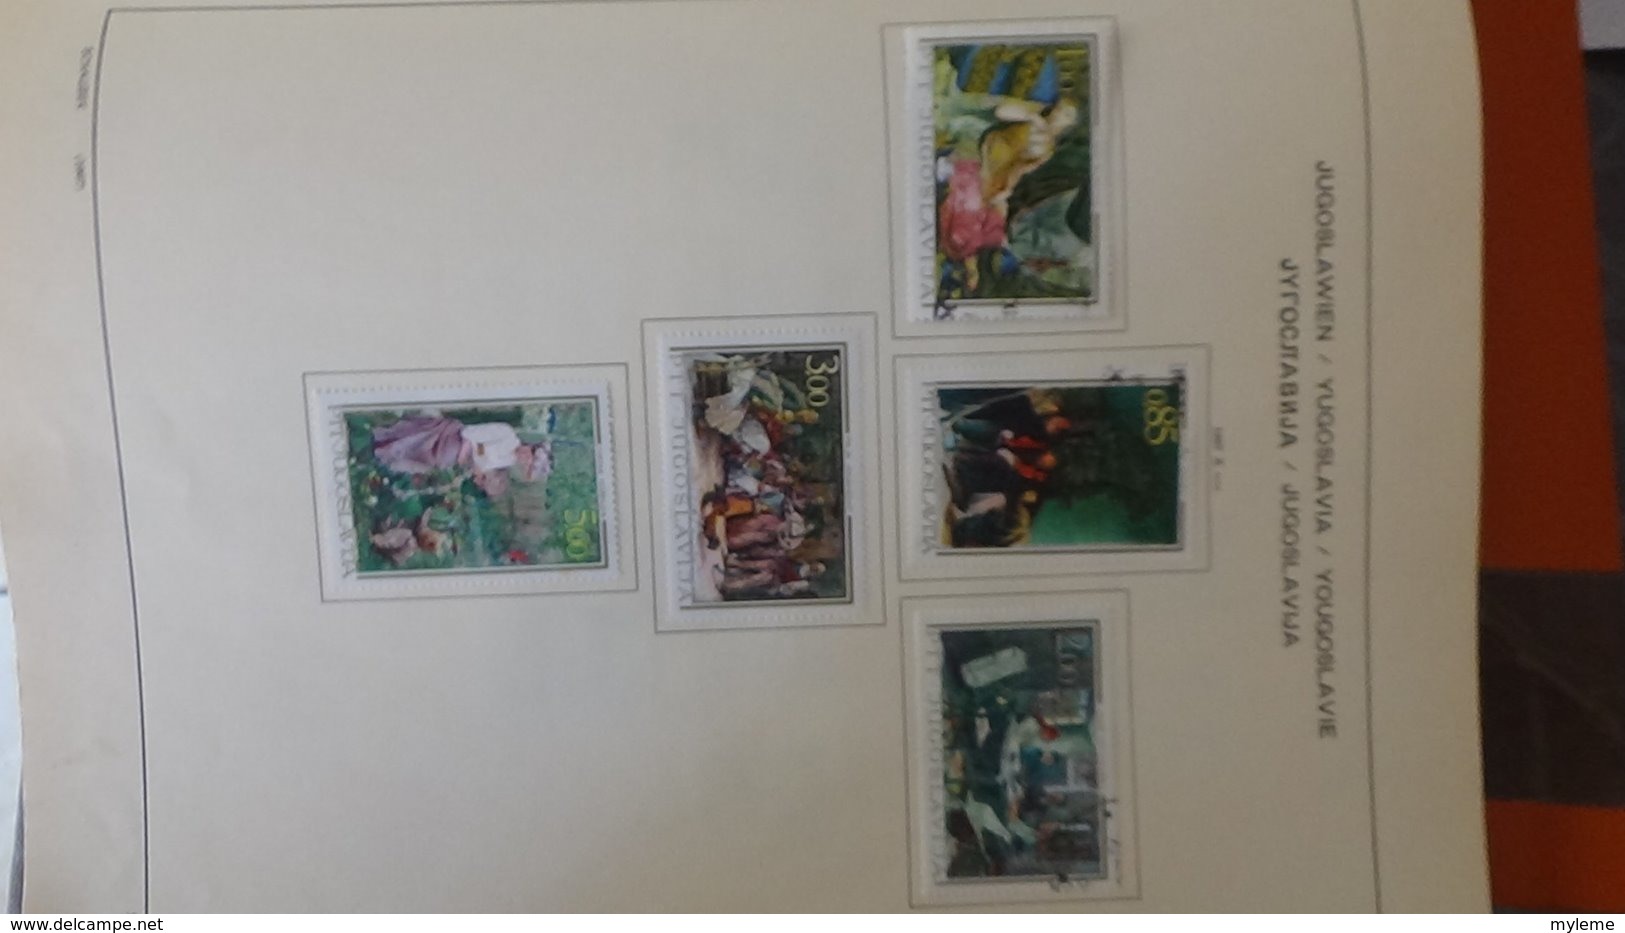 Collection timbres de YOUGOSLAVIE Idéal pour thématiques A saisir !!!